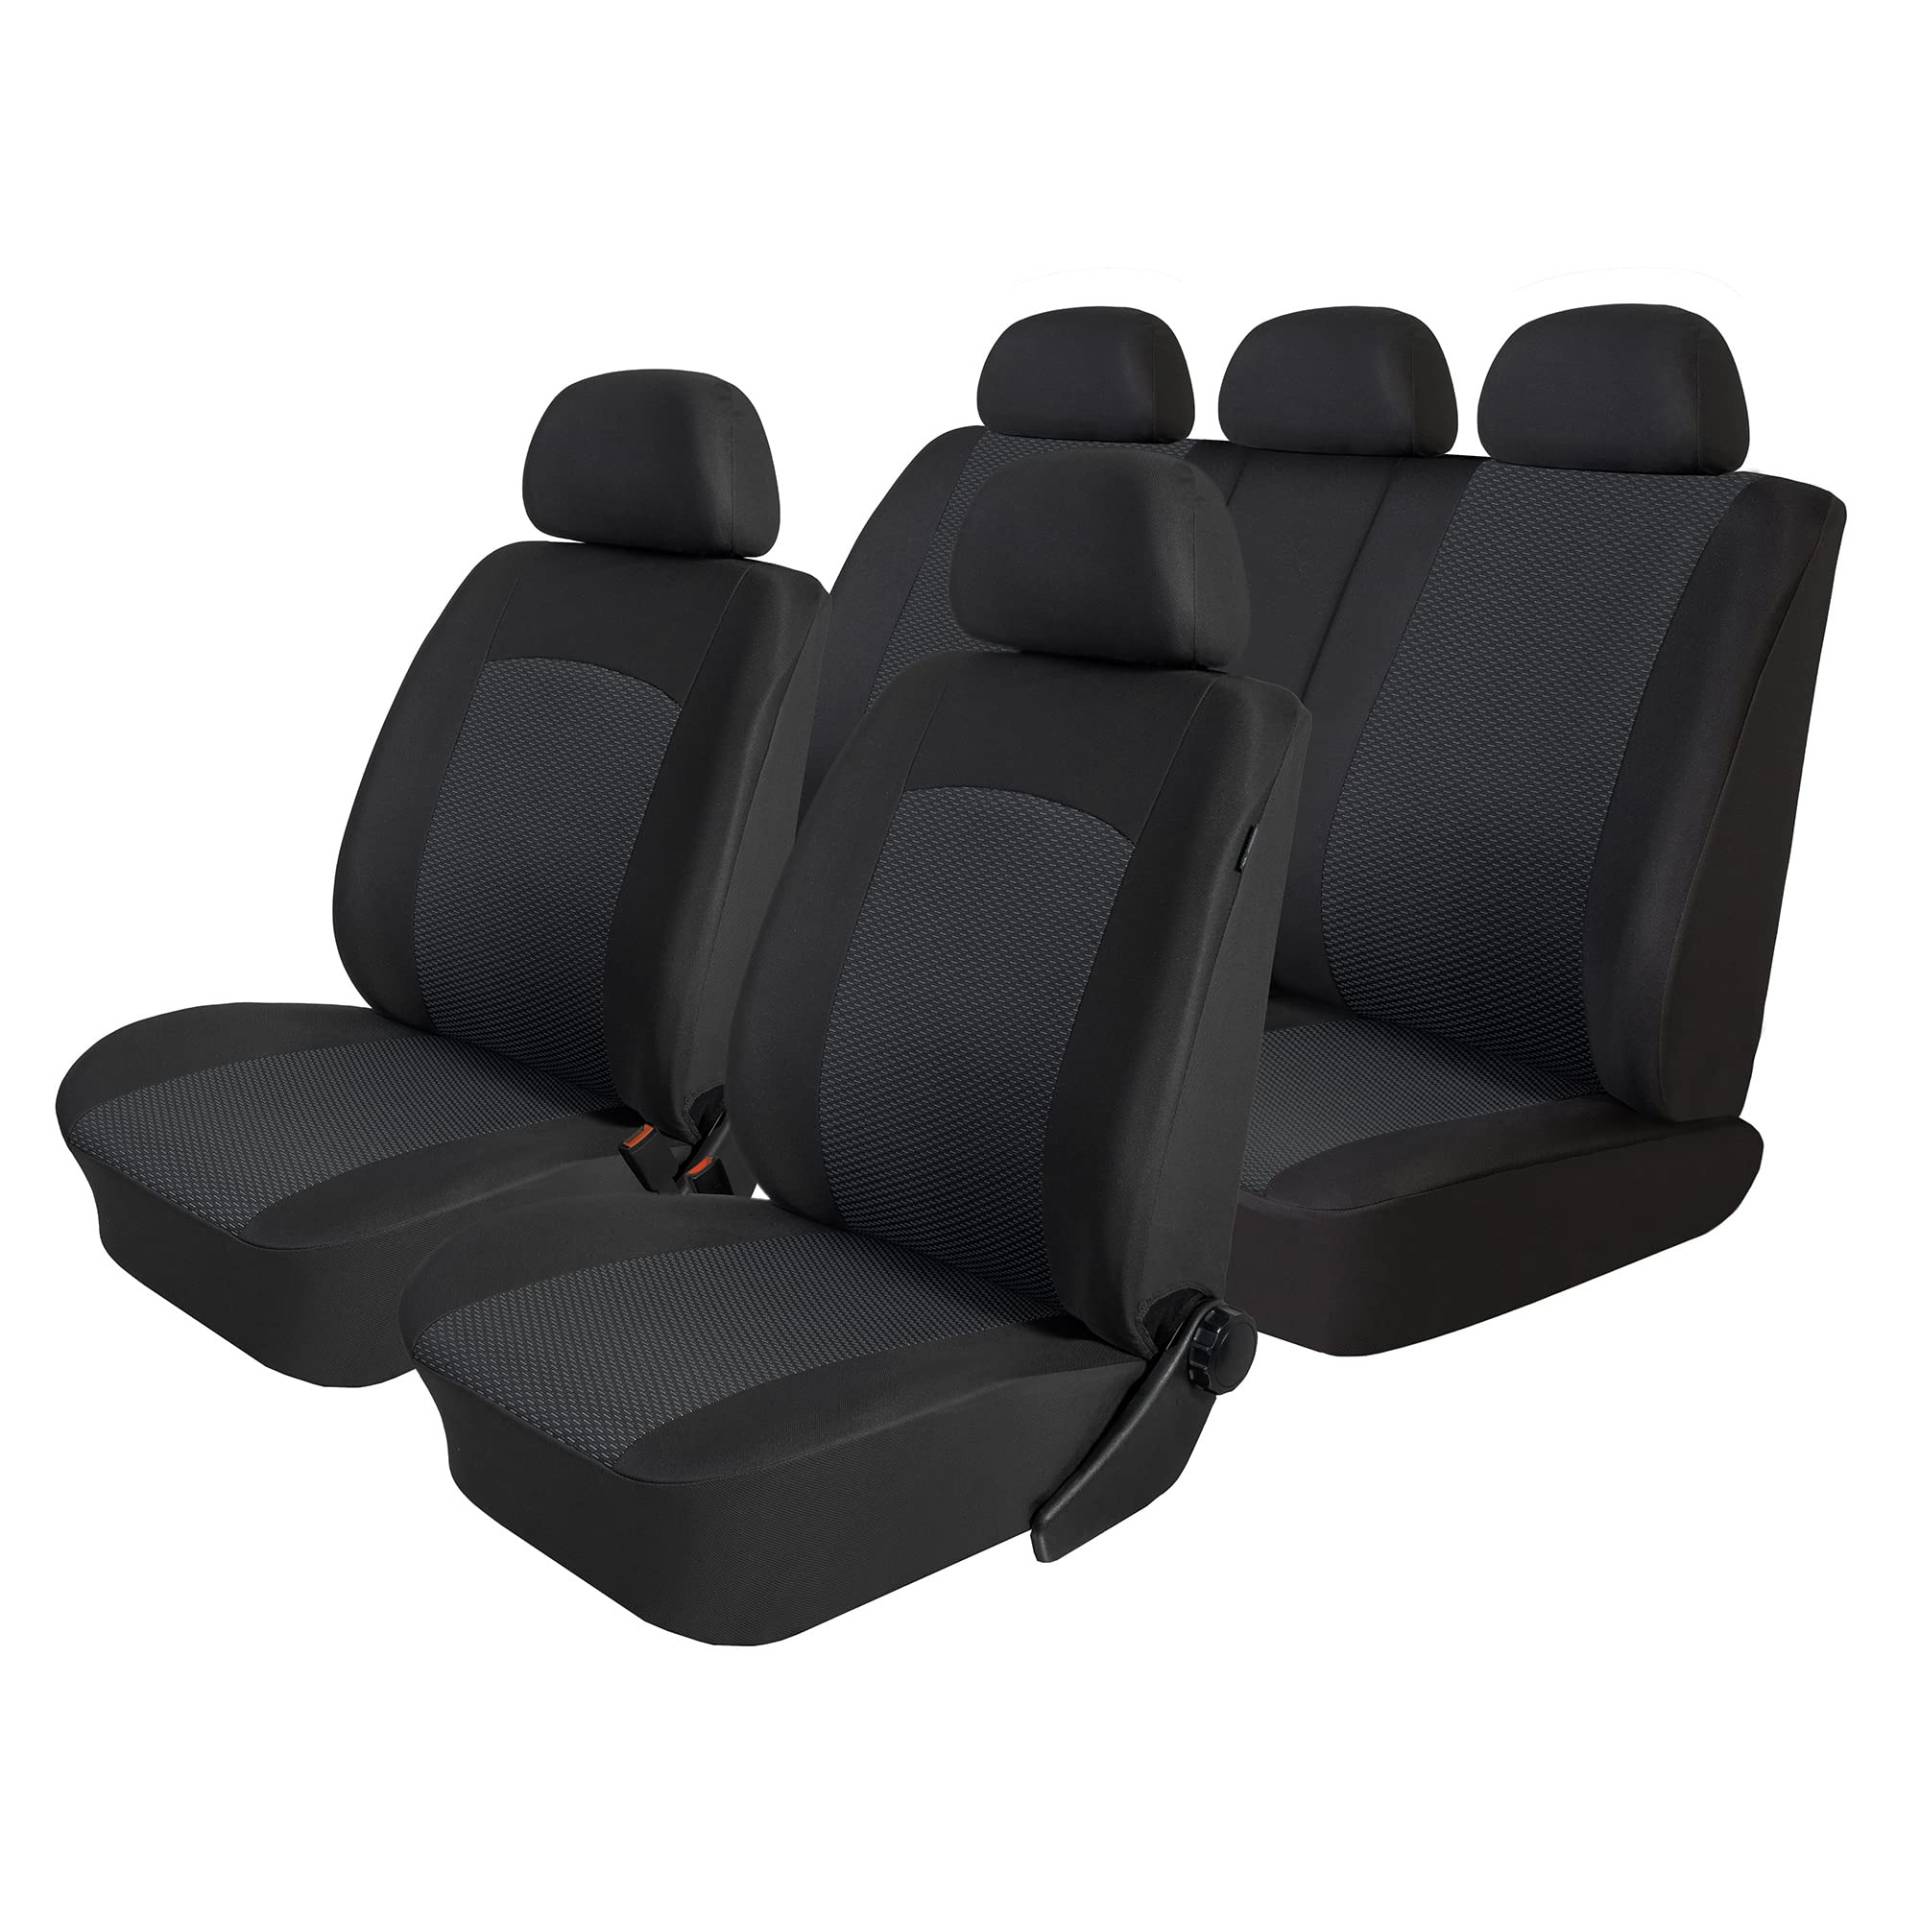 ewaschbaer Sitzbezüge kompatibel mit VW Touran (7 Sitze) 2003-2015, maßgeschneidert von ewaschbaer